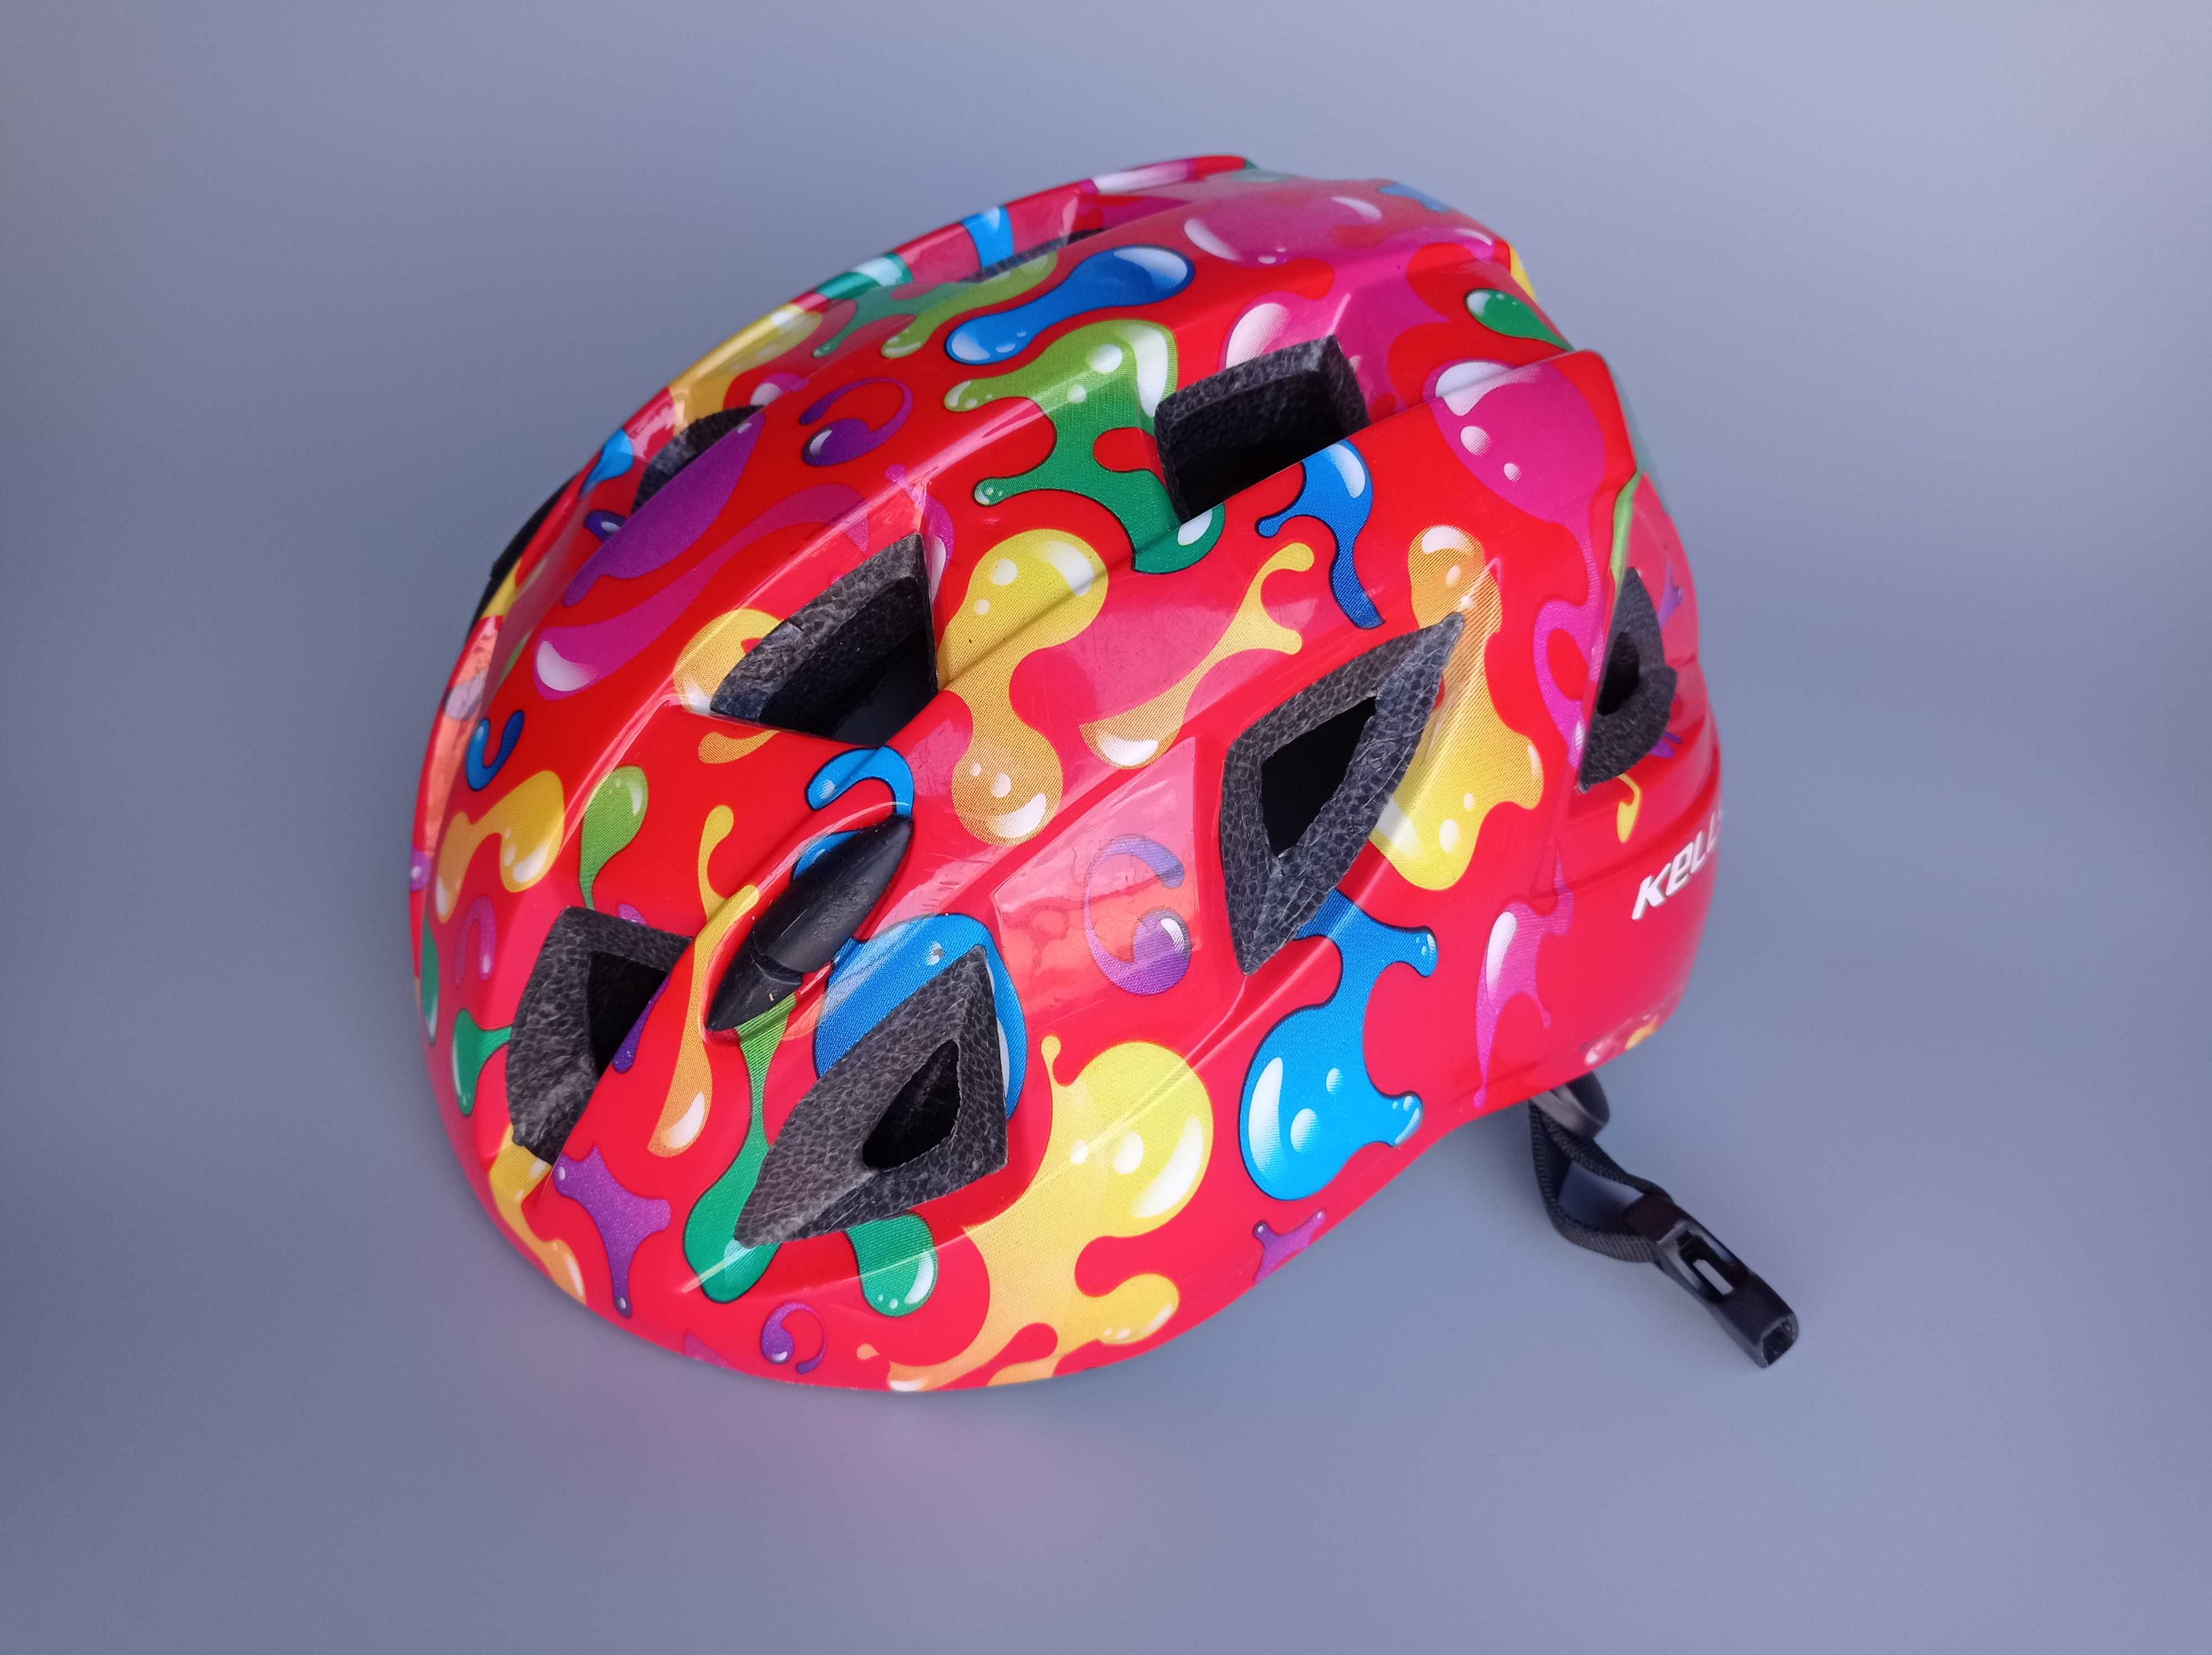 Детский защитный шлем Kellys Smarty, размер S 51-54см, велосипедный